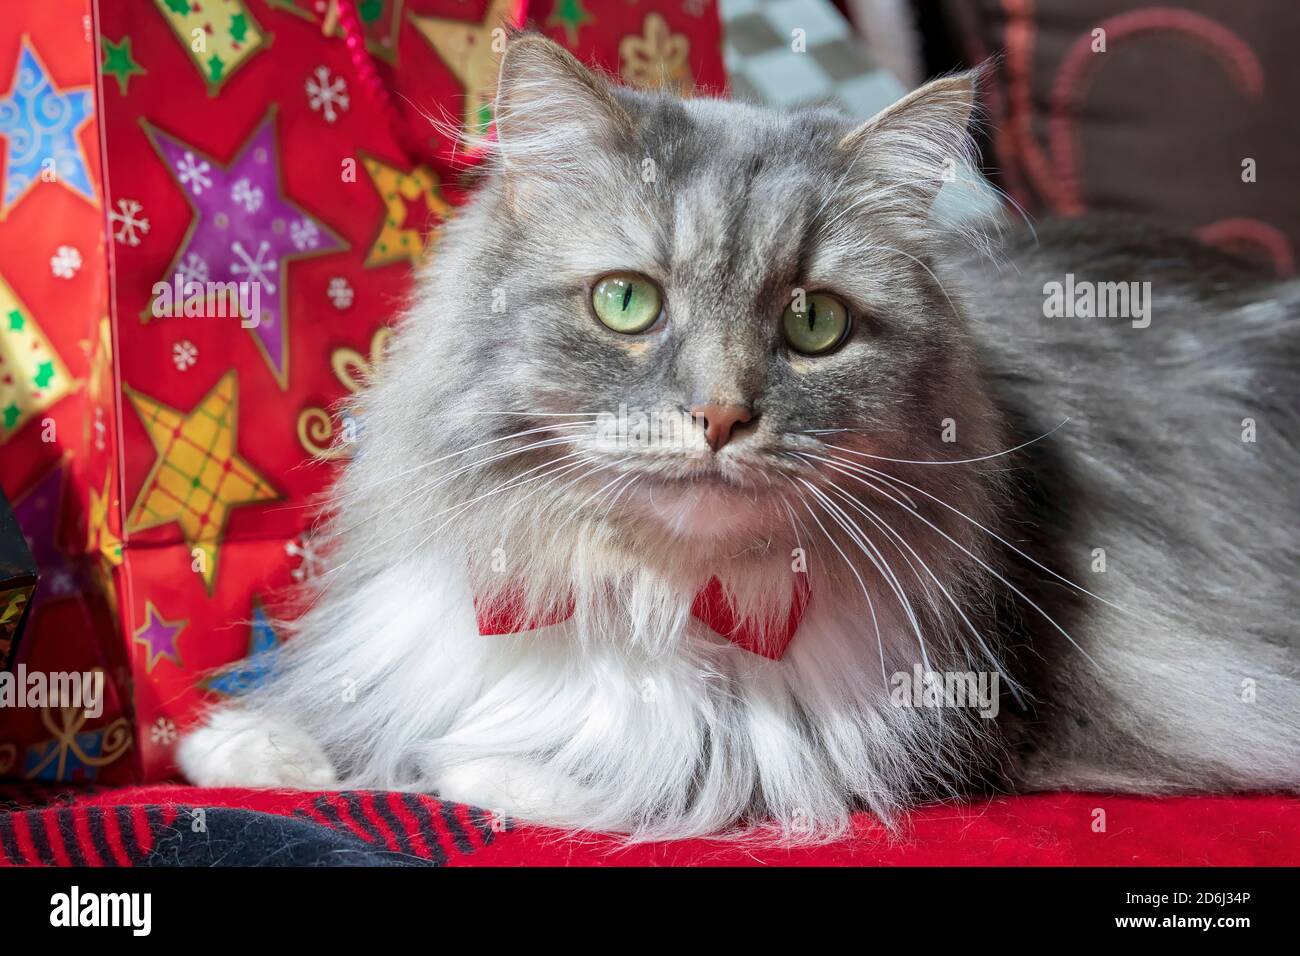 Un gatto tabby grigio dai capelli lunghi con un tema di Natale. Gatto della foresta siberiana con gli occhi verdi e una cravatta bianca che indossa una cravatta rossa. Foto Stock